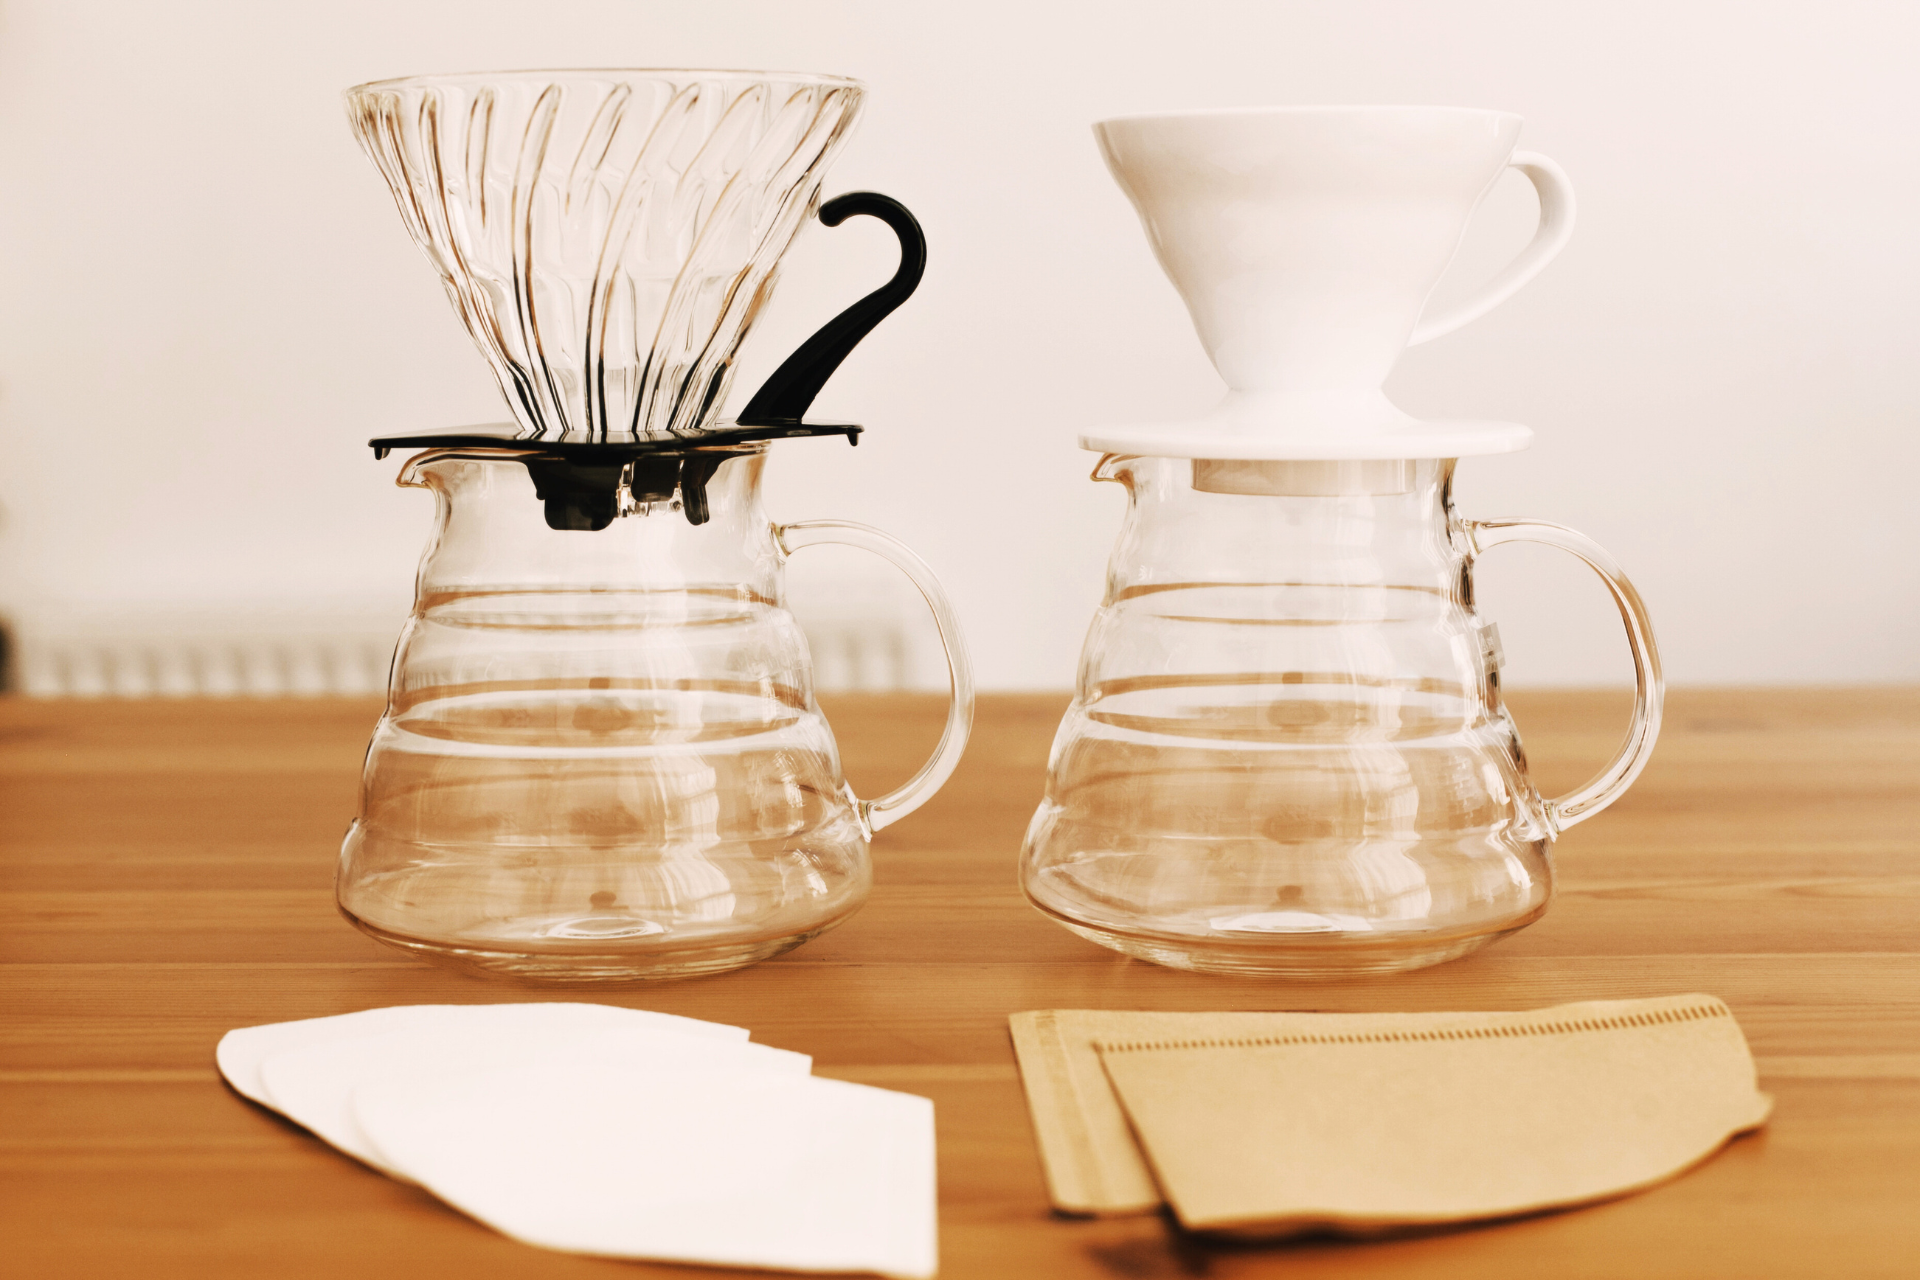 Itens de diferentes métodos de extração de café. Foto: Sonjachnyj - Canva.